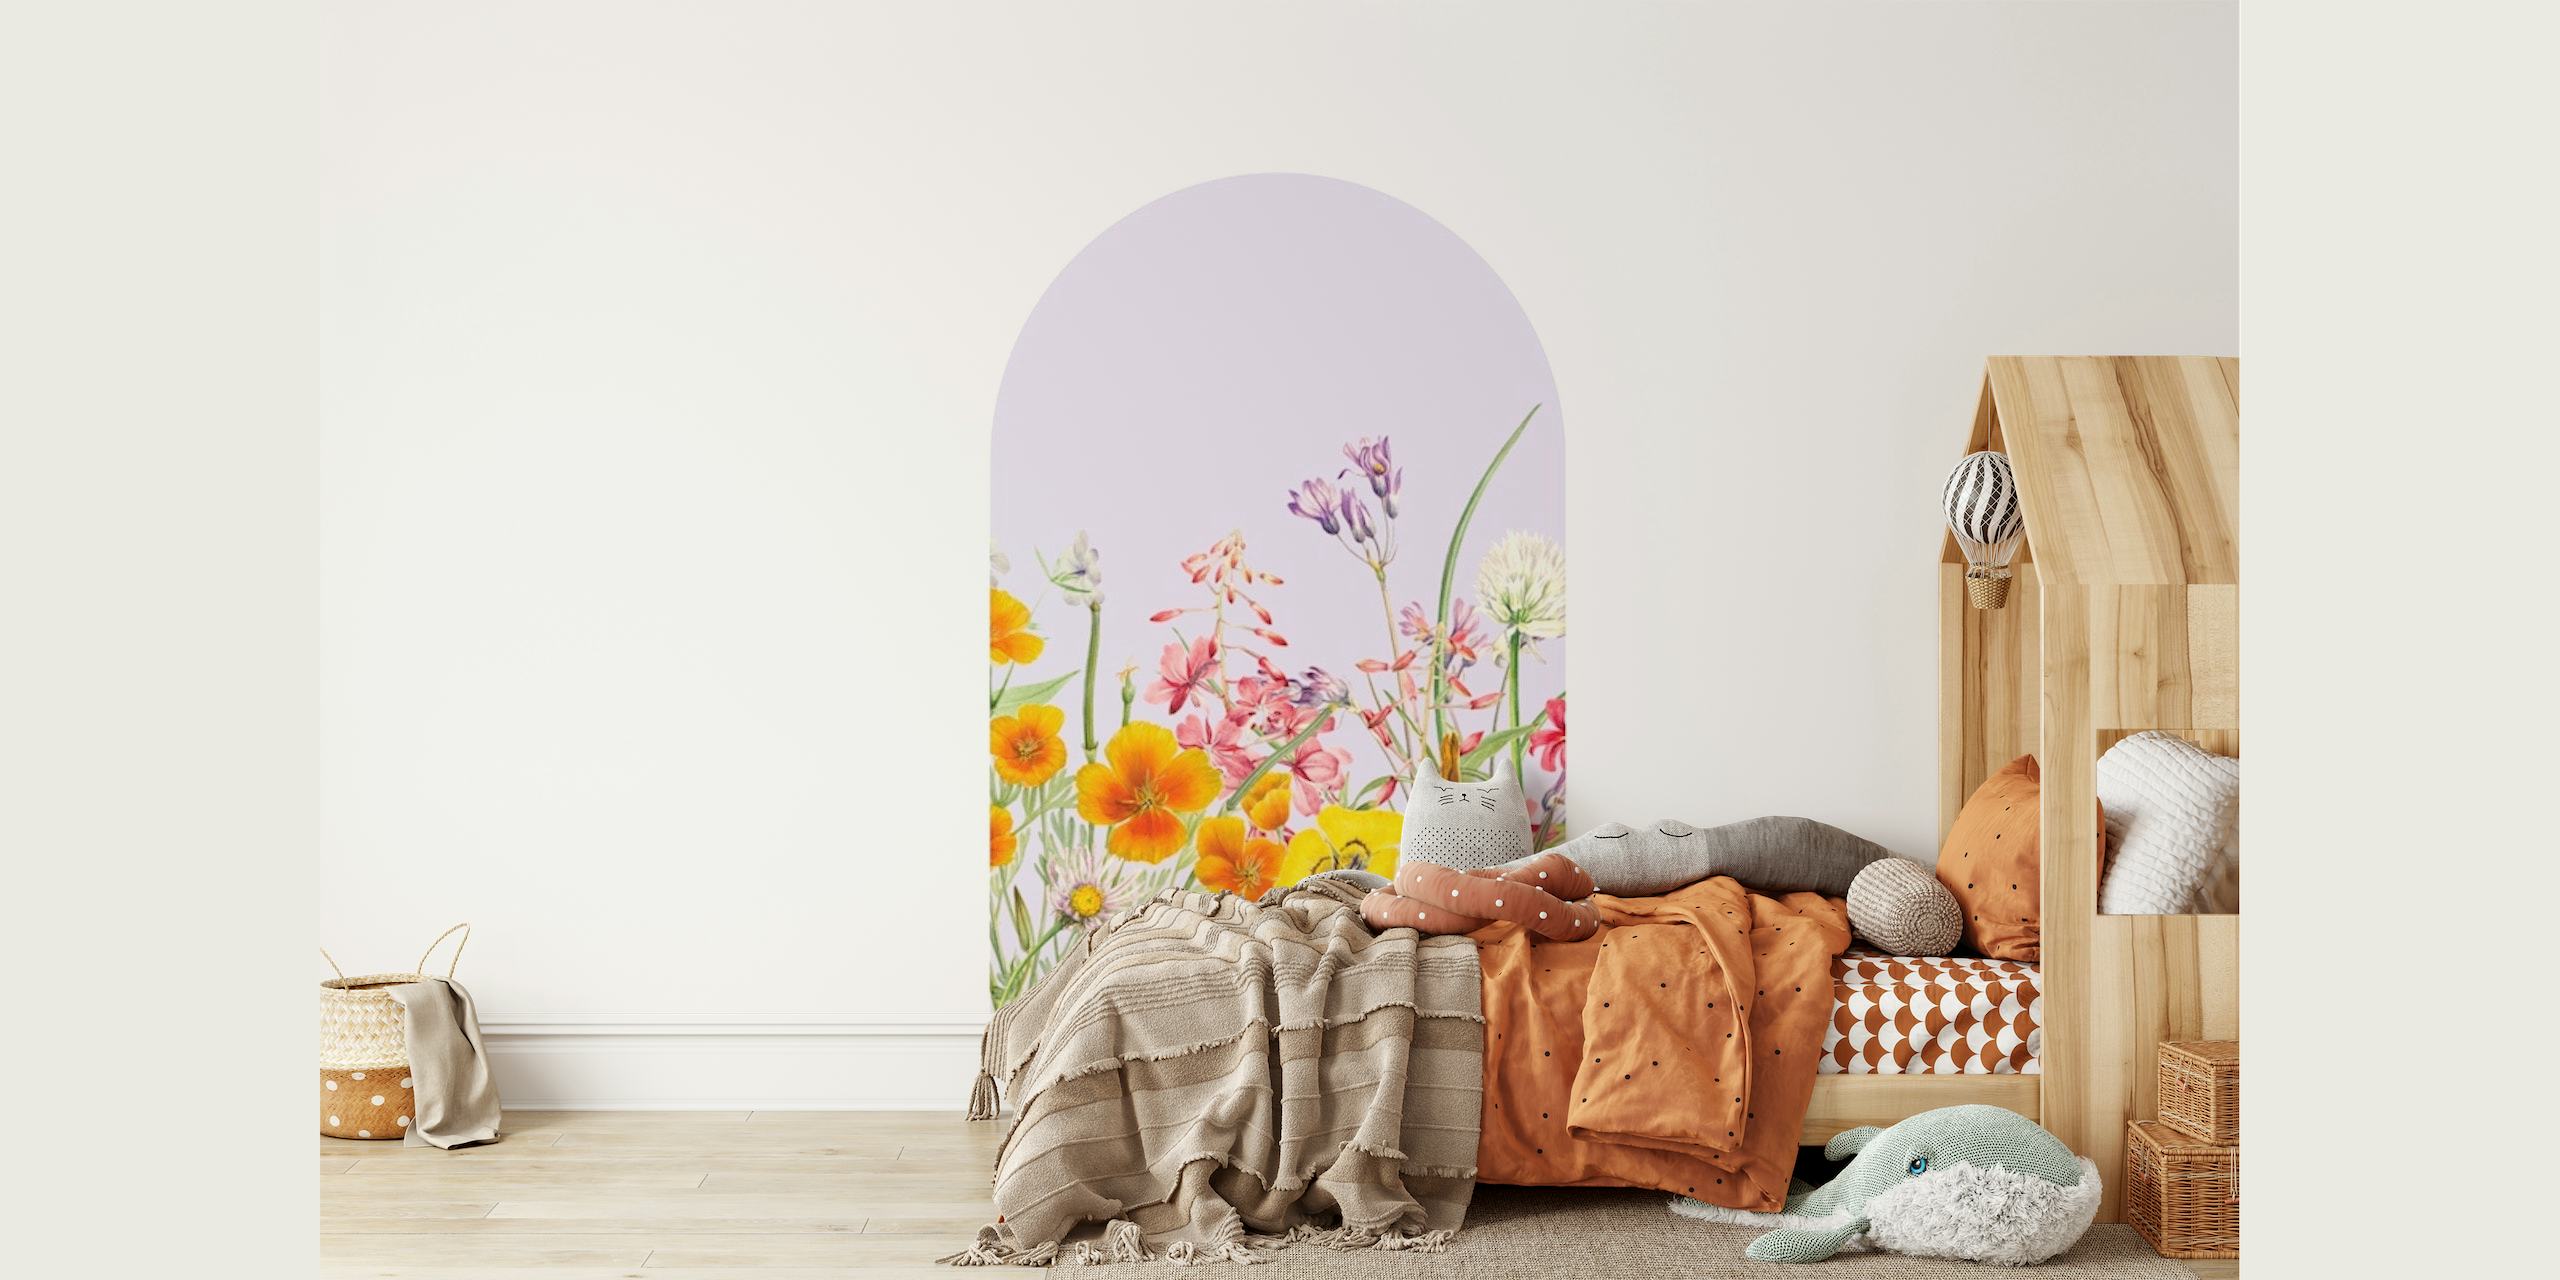 Papier peint pastel Floral Arch avec des fleurs sauvages aux teintes douces